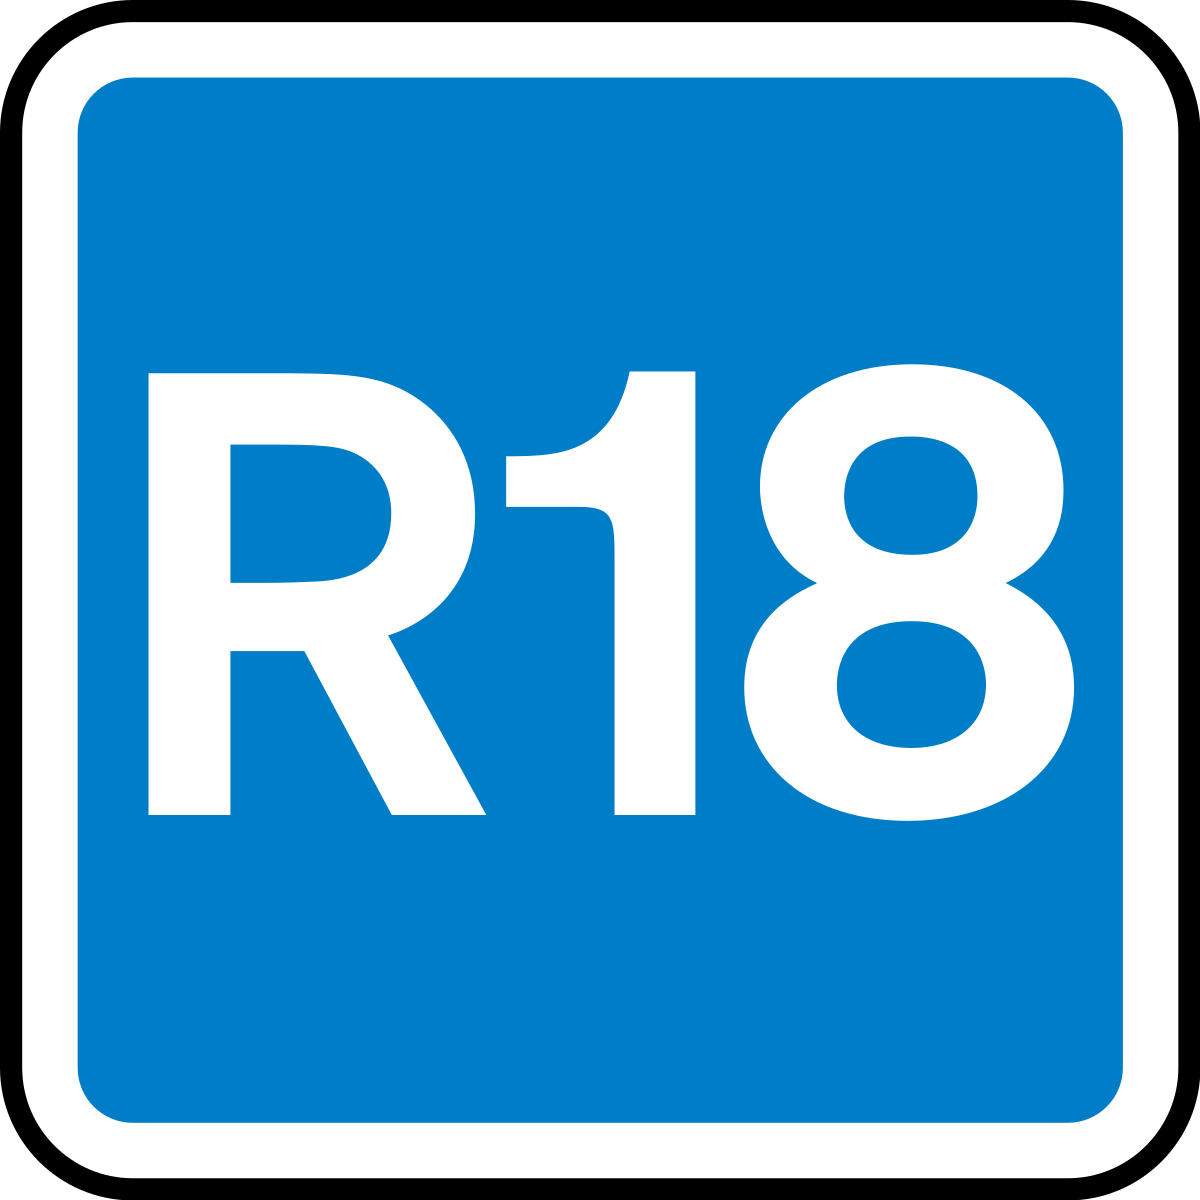 R18 Sex Vide - R18 (British Board of Film Classification) - Wikipedia